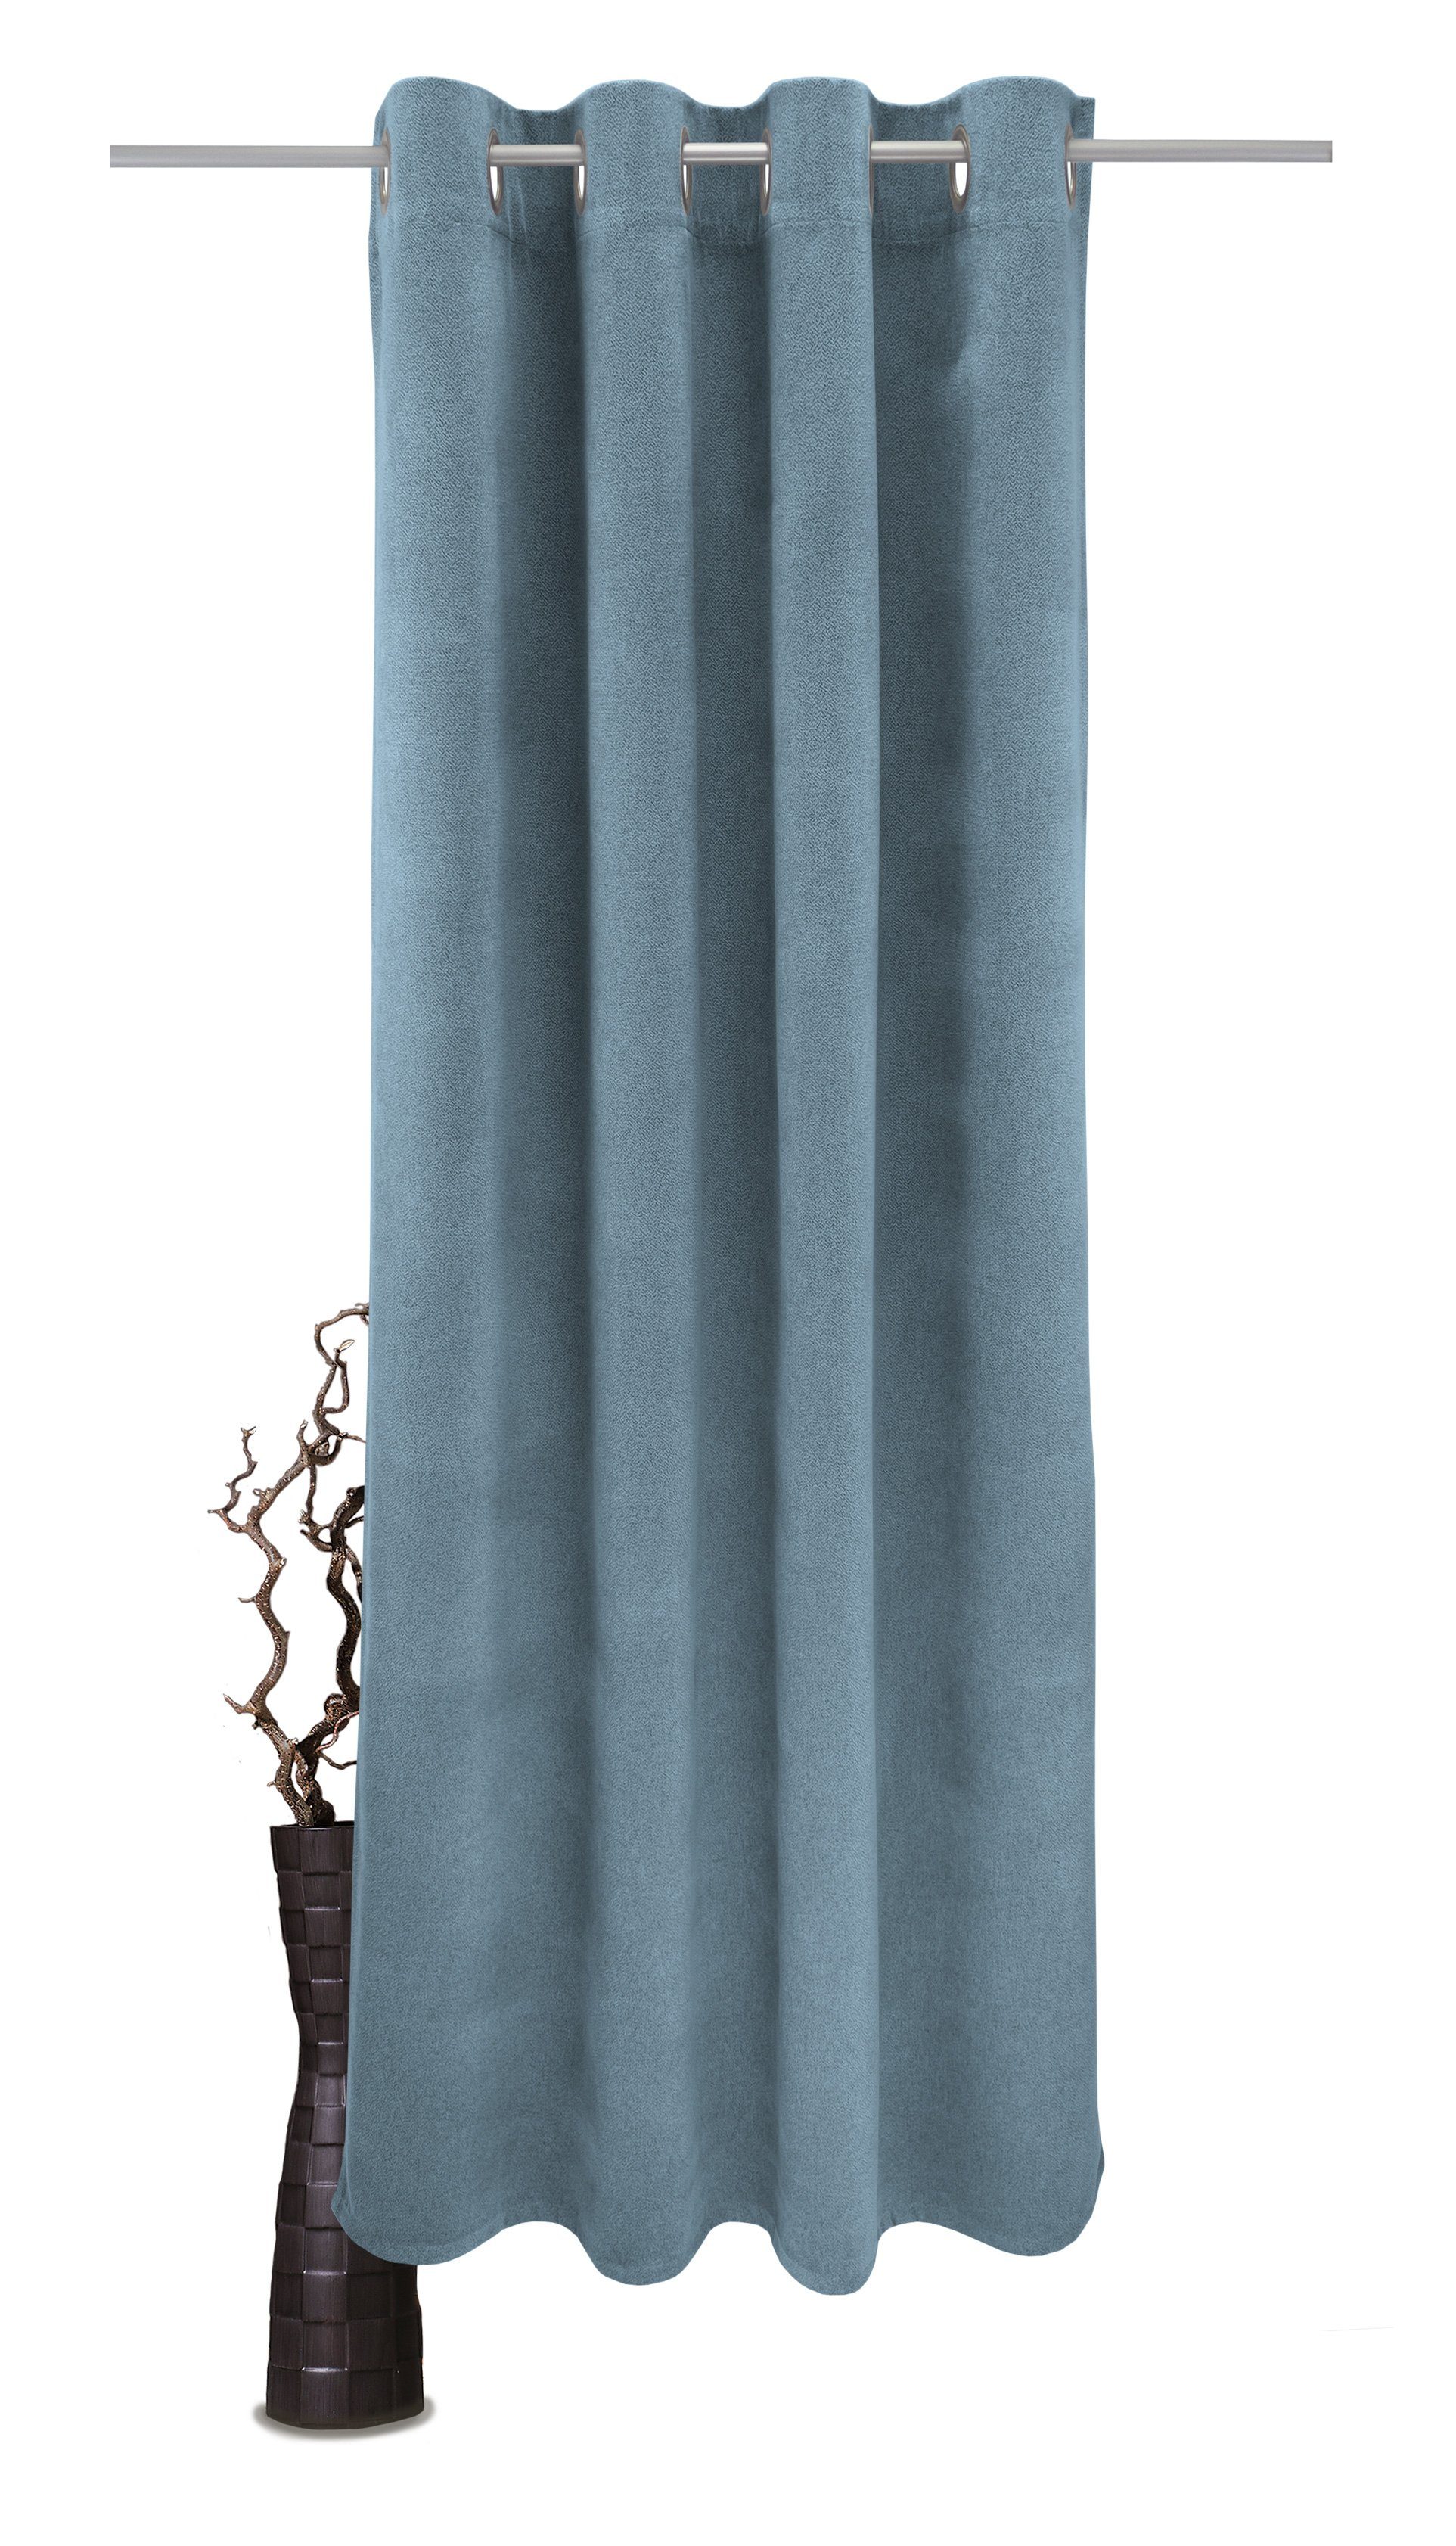 Vorhang Alea, VHG, Ösen (1 St), verdunkelnd, Polyester, Wärmeschutz, Kälteschutz, Energie sparend, einfarbig, Breite 145cm, 415 g/²m hellblau